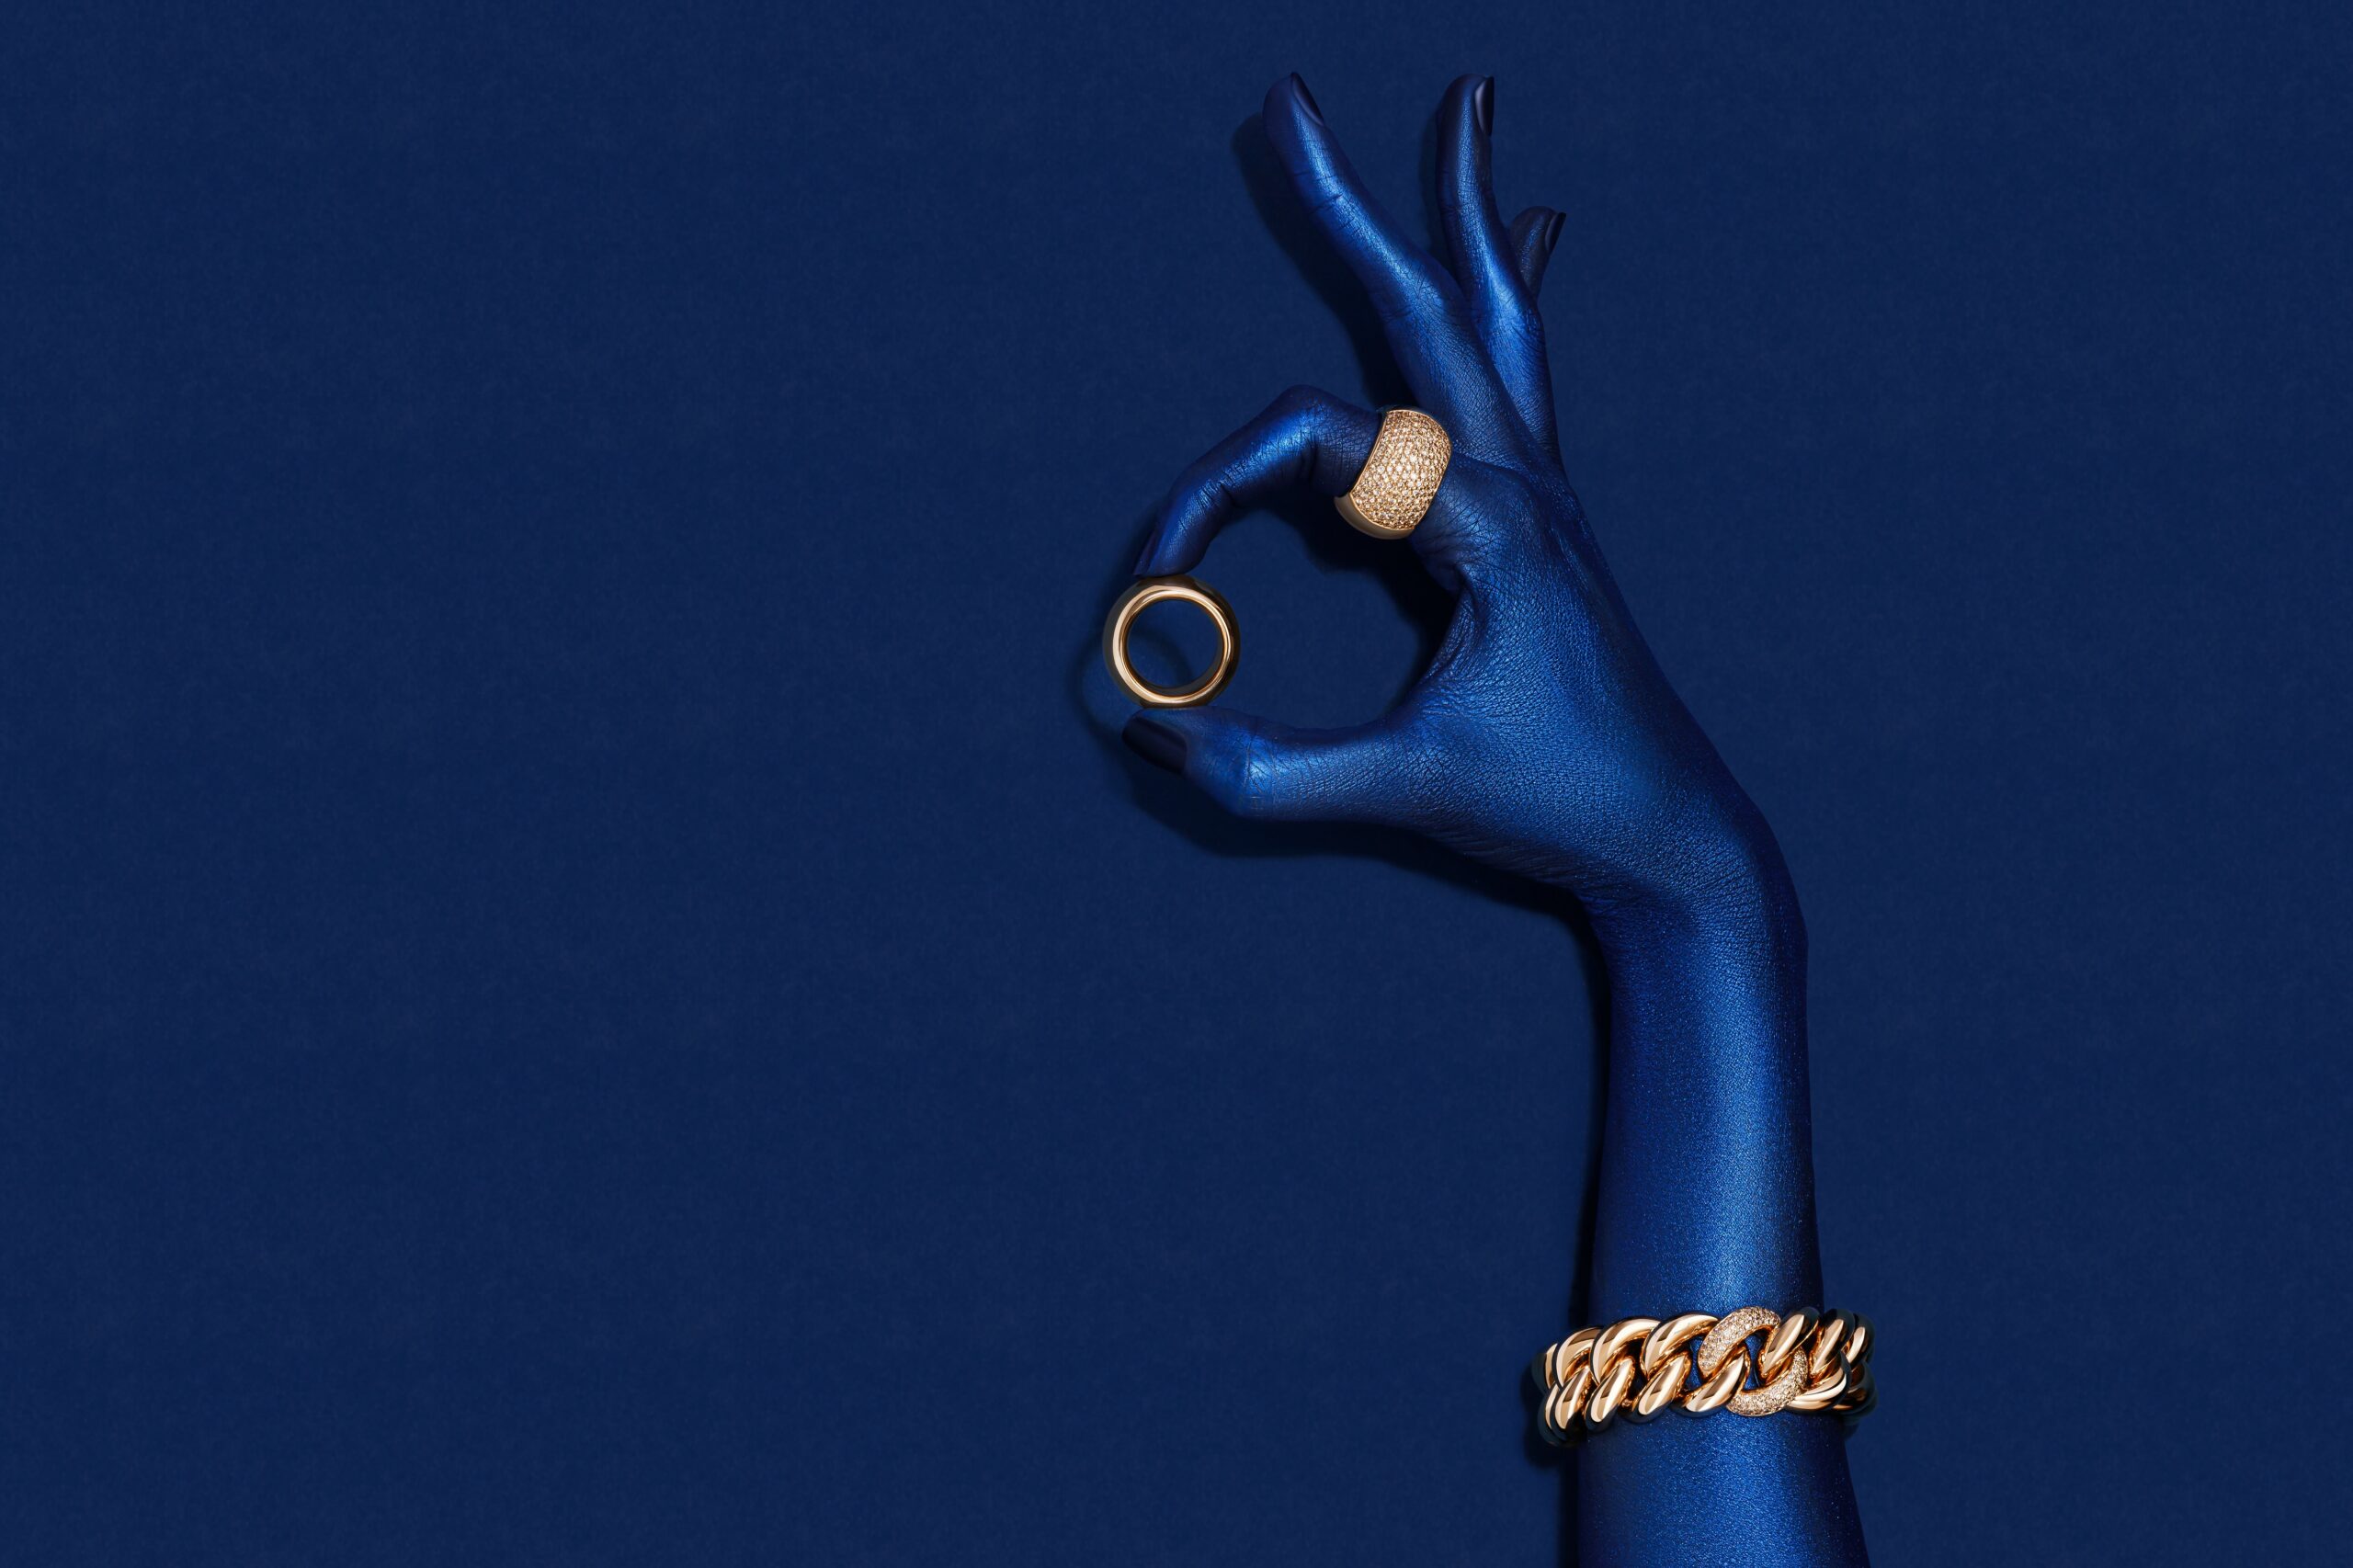 Blaue Hand mit goldenen Ringen und goldenem Armband